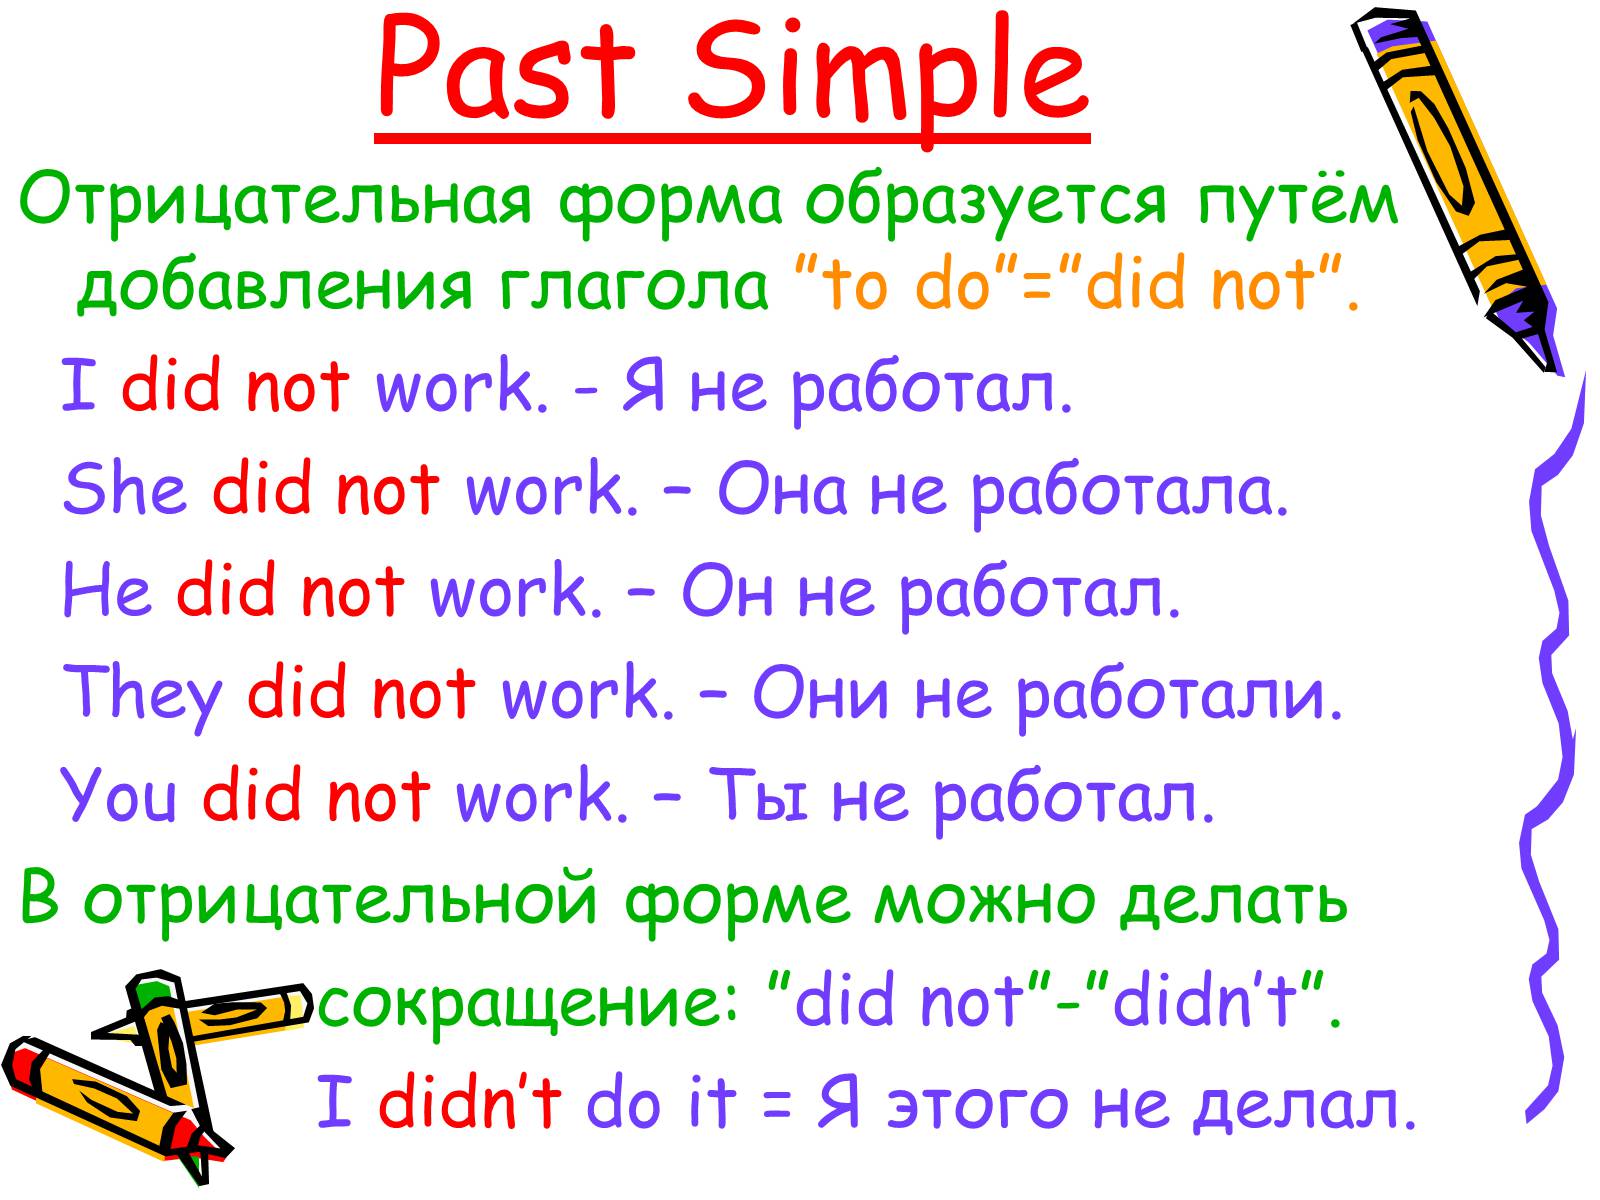 Английский на 5 паст симпл. Как составлять предложения в past simple. 3 Легких предложения past simple. Past simple примеры предложений с переводом. 3 Предложения в past simple.